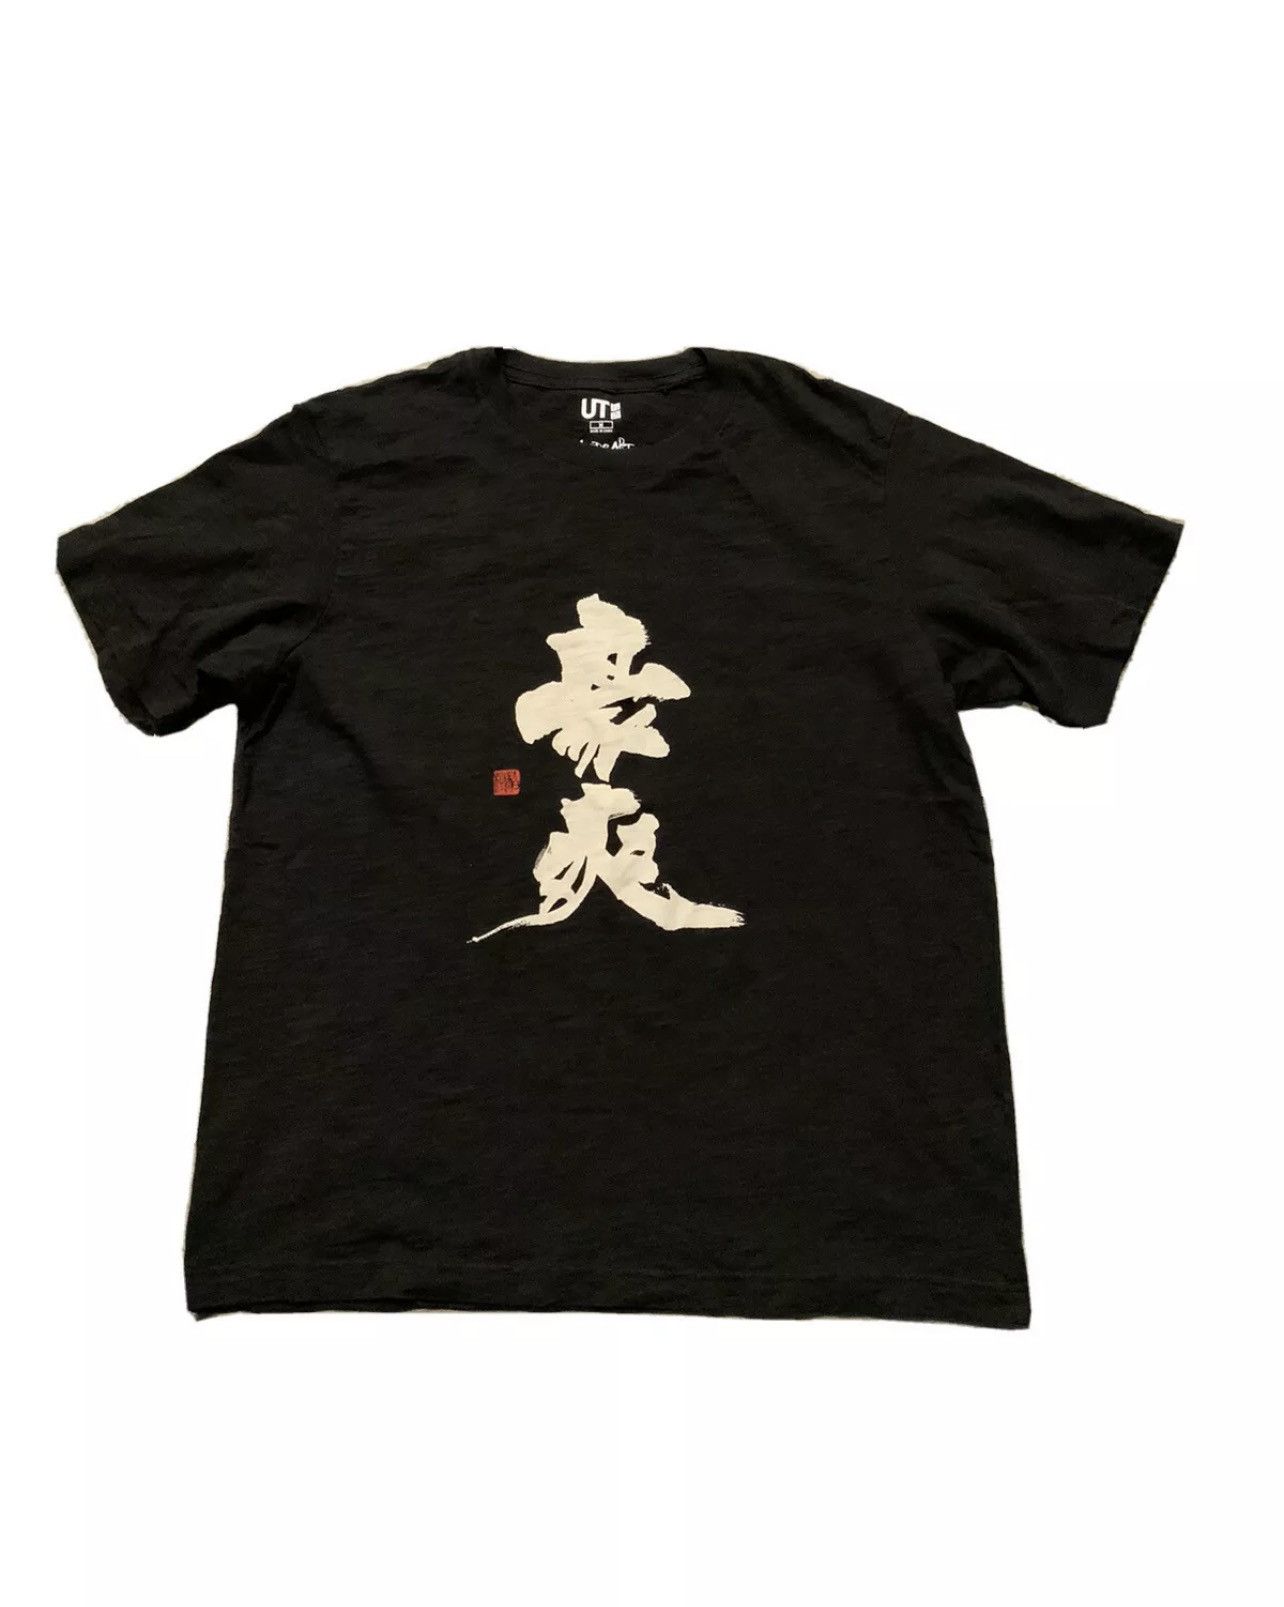 Uniqlo Uniqlo Shodo Art Calligraphy Hakuju Kuiseko Limited T-Shirt ...